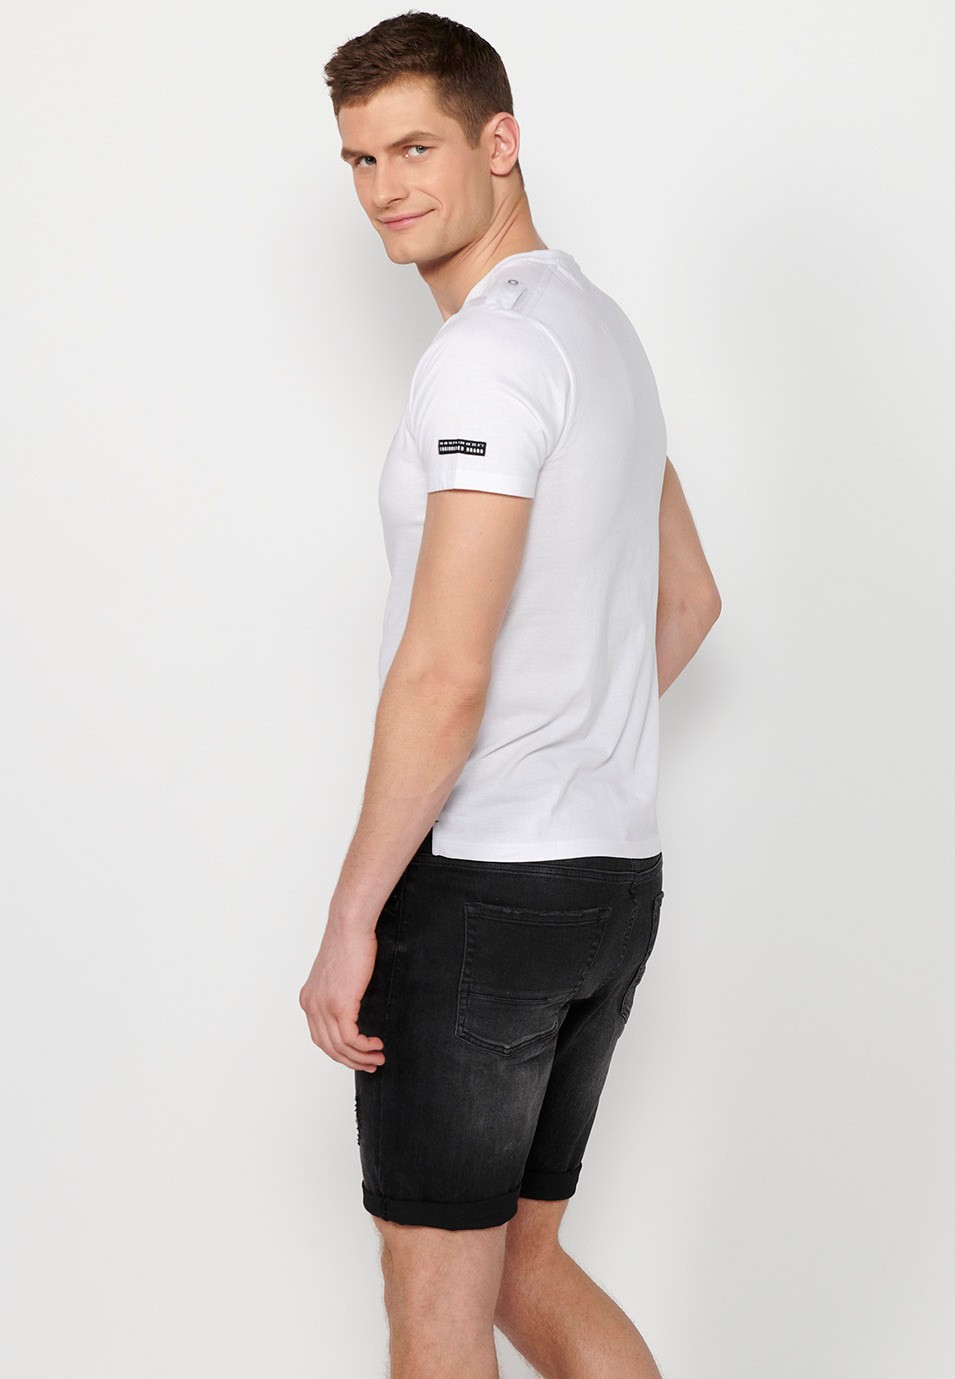 Weißes Herren-T-Shirt aus Baumwolle mit kurzen Ärmeln, Rundhalsausschnitt und geknöpfter Öffnung